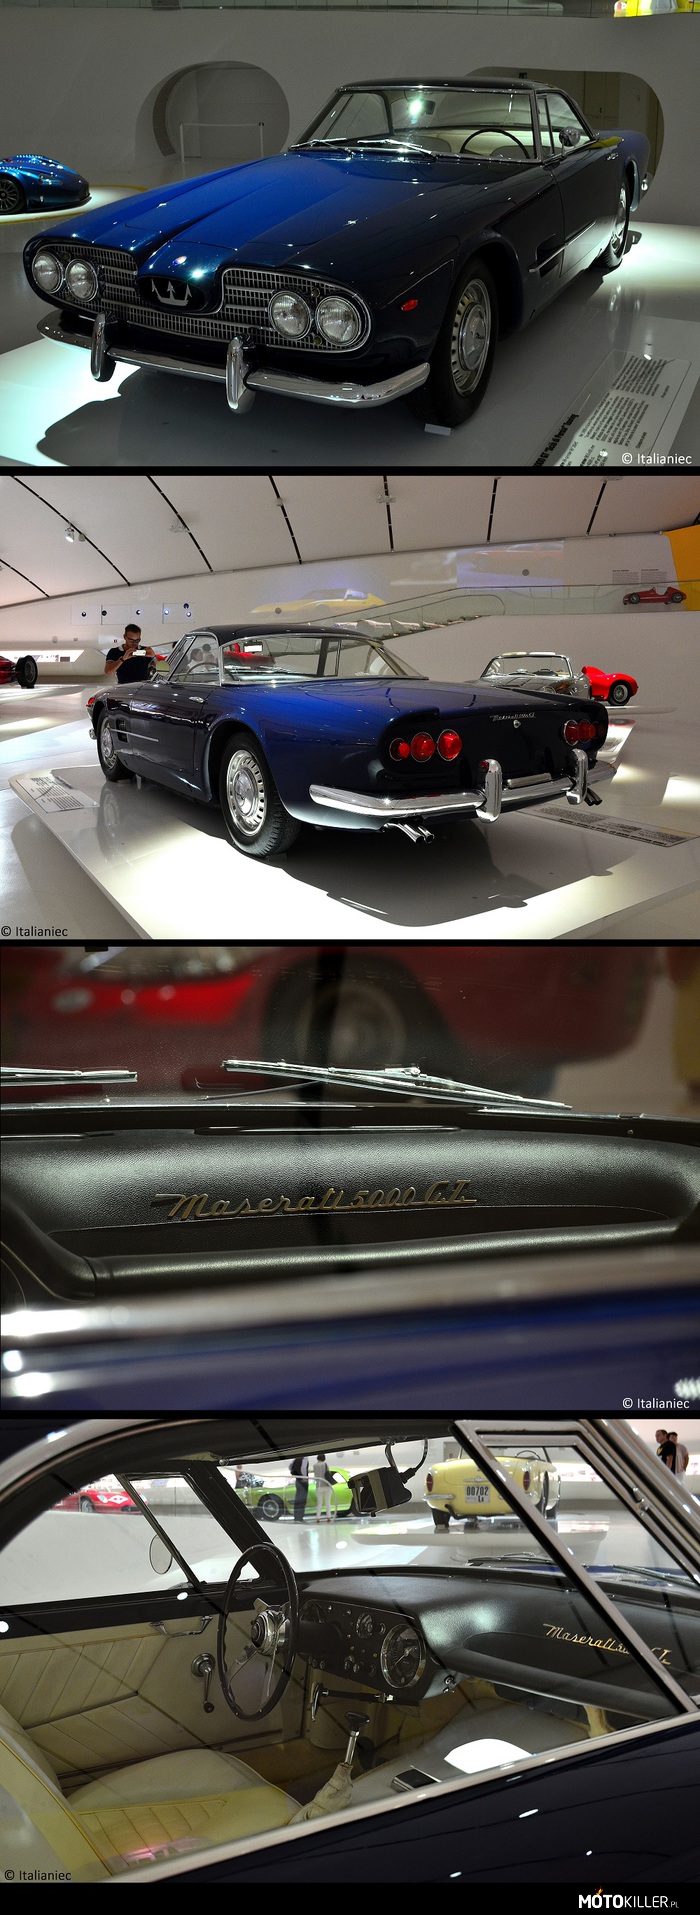 Maserati 5000 GT &quot;Scià di Persia&quot; – W 1958 Szachinszach Perski skontaktował się z Maserati, żeby zamówić &quot; najszybszy samochód na świecie&quot;. Maserati zlecił nadwozie Carrozzerii Toruing. Jako baza zostało użyte podwozie z 3500GT, ale z nowym silnikiem 5000 V8 pochodzący od wyścigówki 450S. To jest pierwszy egzemplarz z serii 5000 GT, powstały kolejne 33. Nadwozia, tak jak z pierwszym egzemplarzem, były produkowane były przez różne firmy trudniące się ich projektowaniem (np. Carrozzeria Touring, Carrozzeria Allemano, Pietro Frua, Carrozzeria Monterosa, Pininfarina, Ghia, Michelotti czy Bertone). 

Silnik: V8, DOHC, 4948cc, 325KM
V max: 260 Km/h 